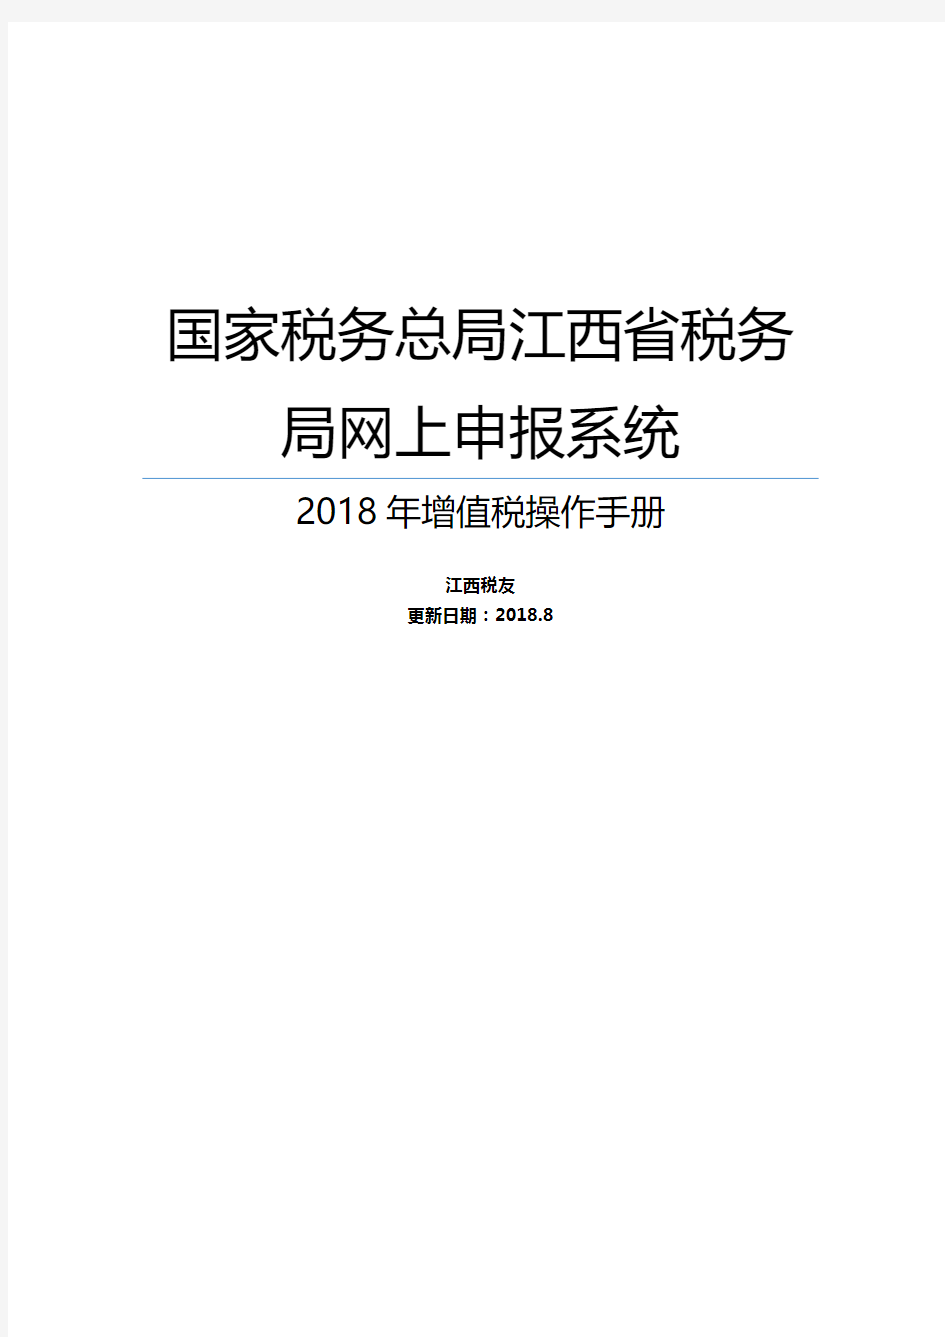 江西省税务局网上申报系统(客户端版)操作手册-增值税